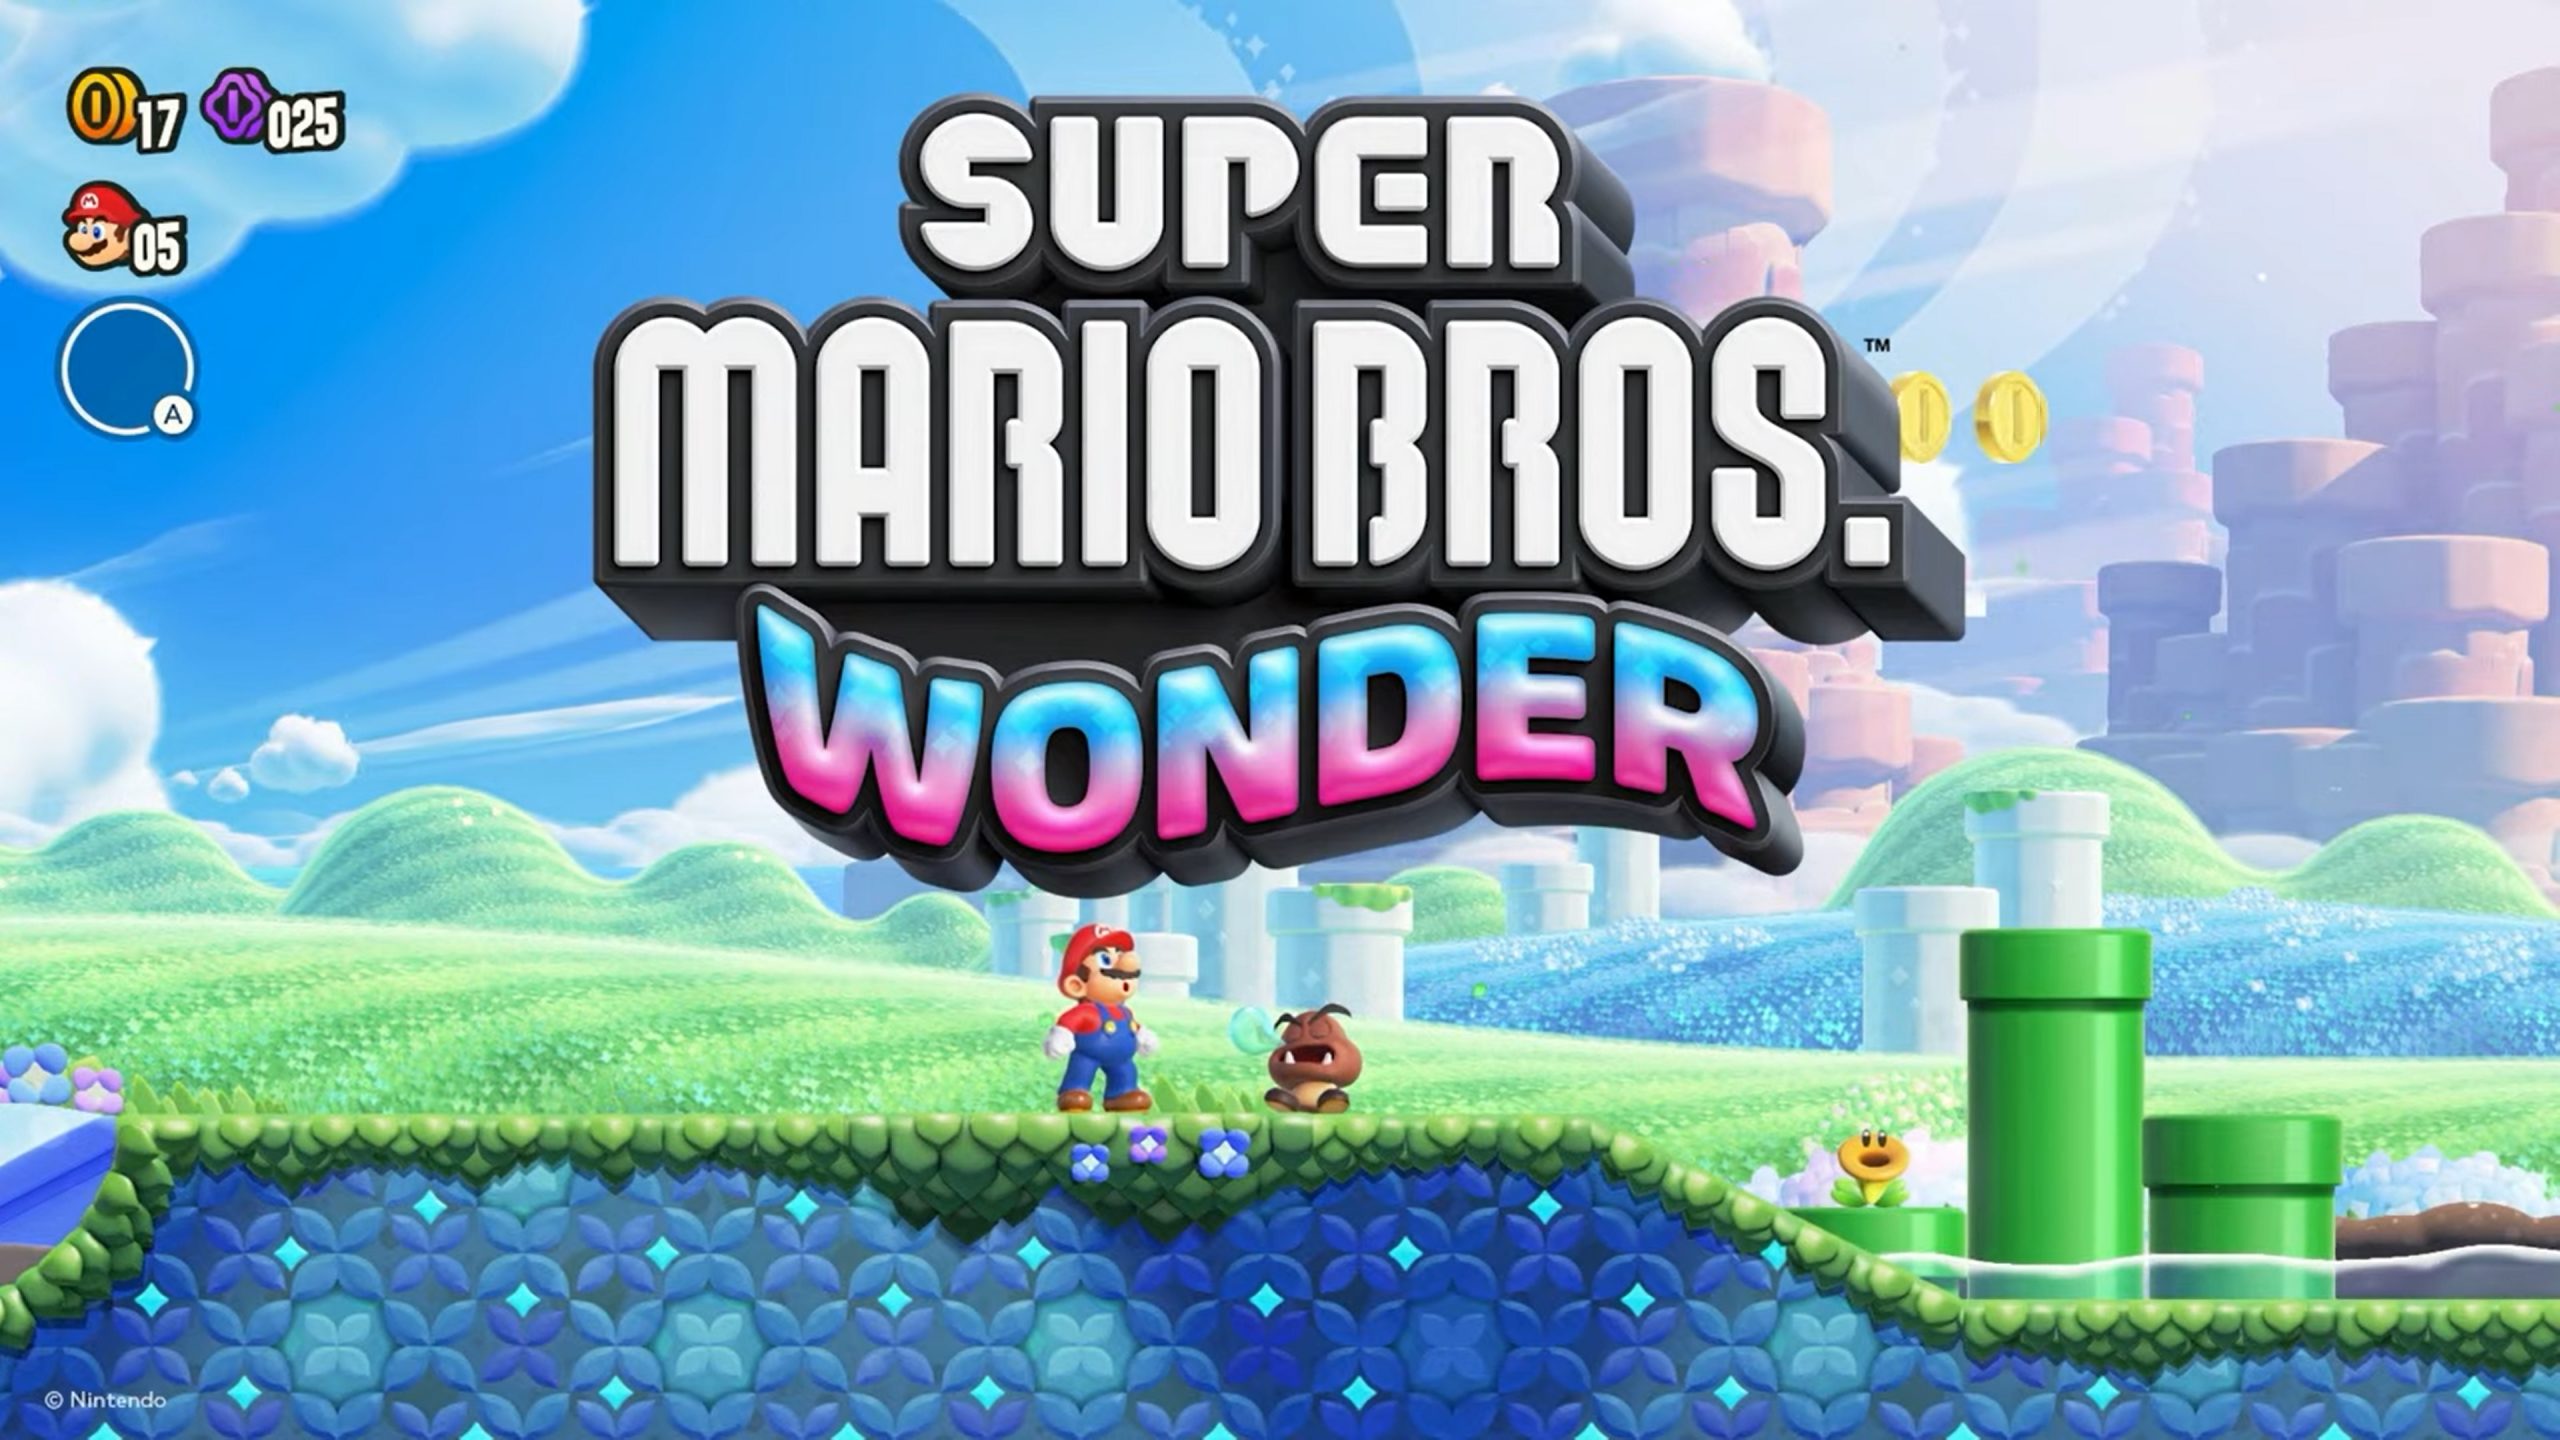 Le nombre de copies physiques de Super Mario Bros. Wonder vendues au Japon s'élève à plus de 638 000. Le jeu a pris la première place du palmarès